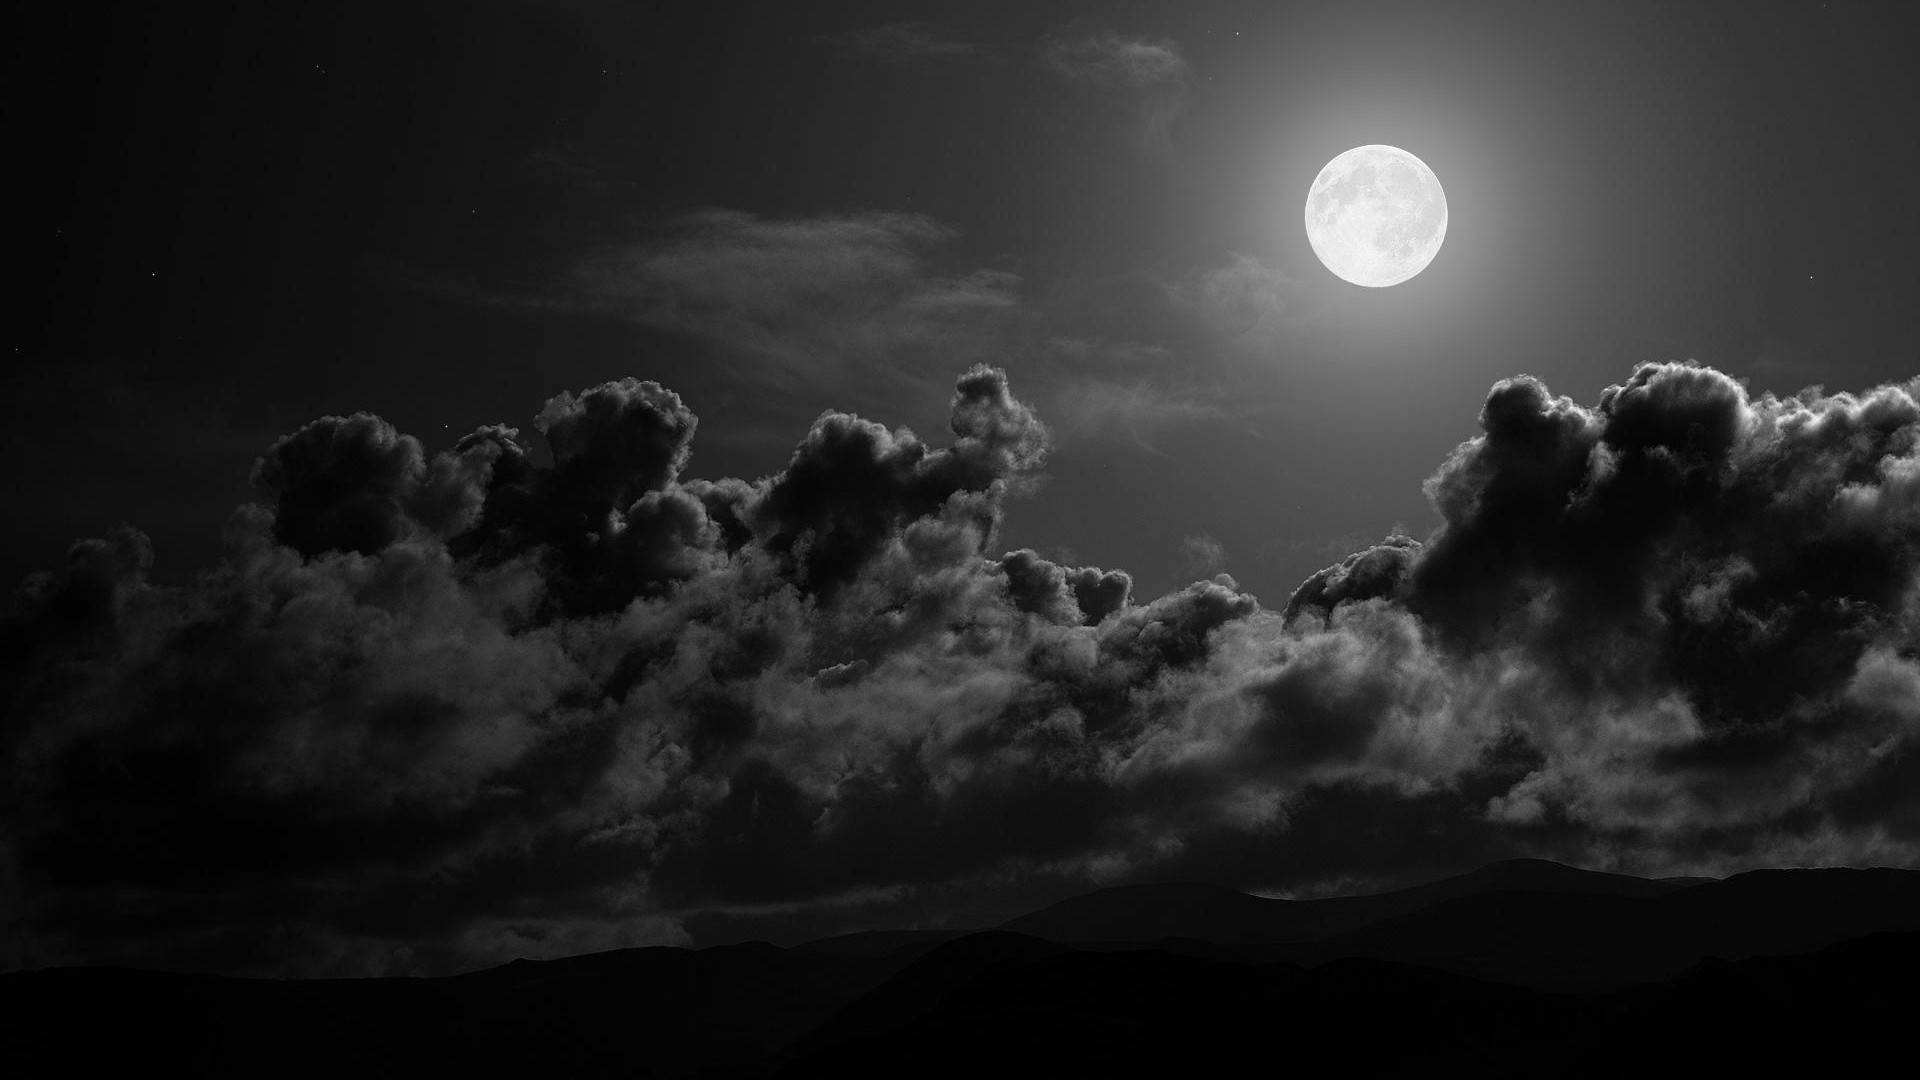 The Serenity Of The Dark Night Skies